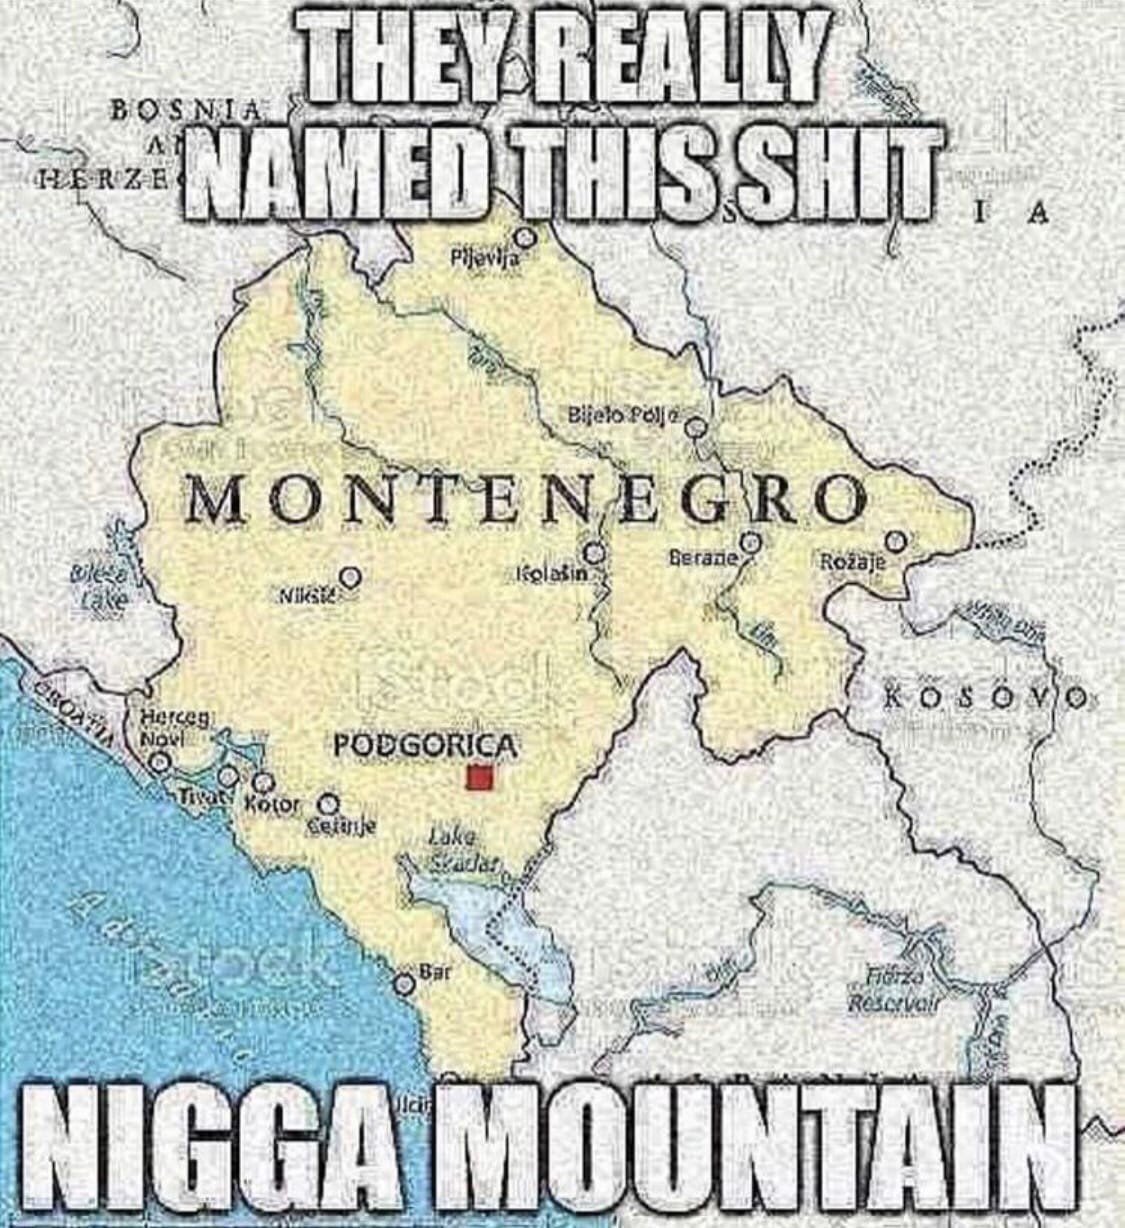 Le montenegro - meme